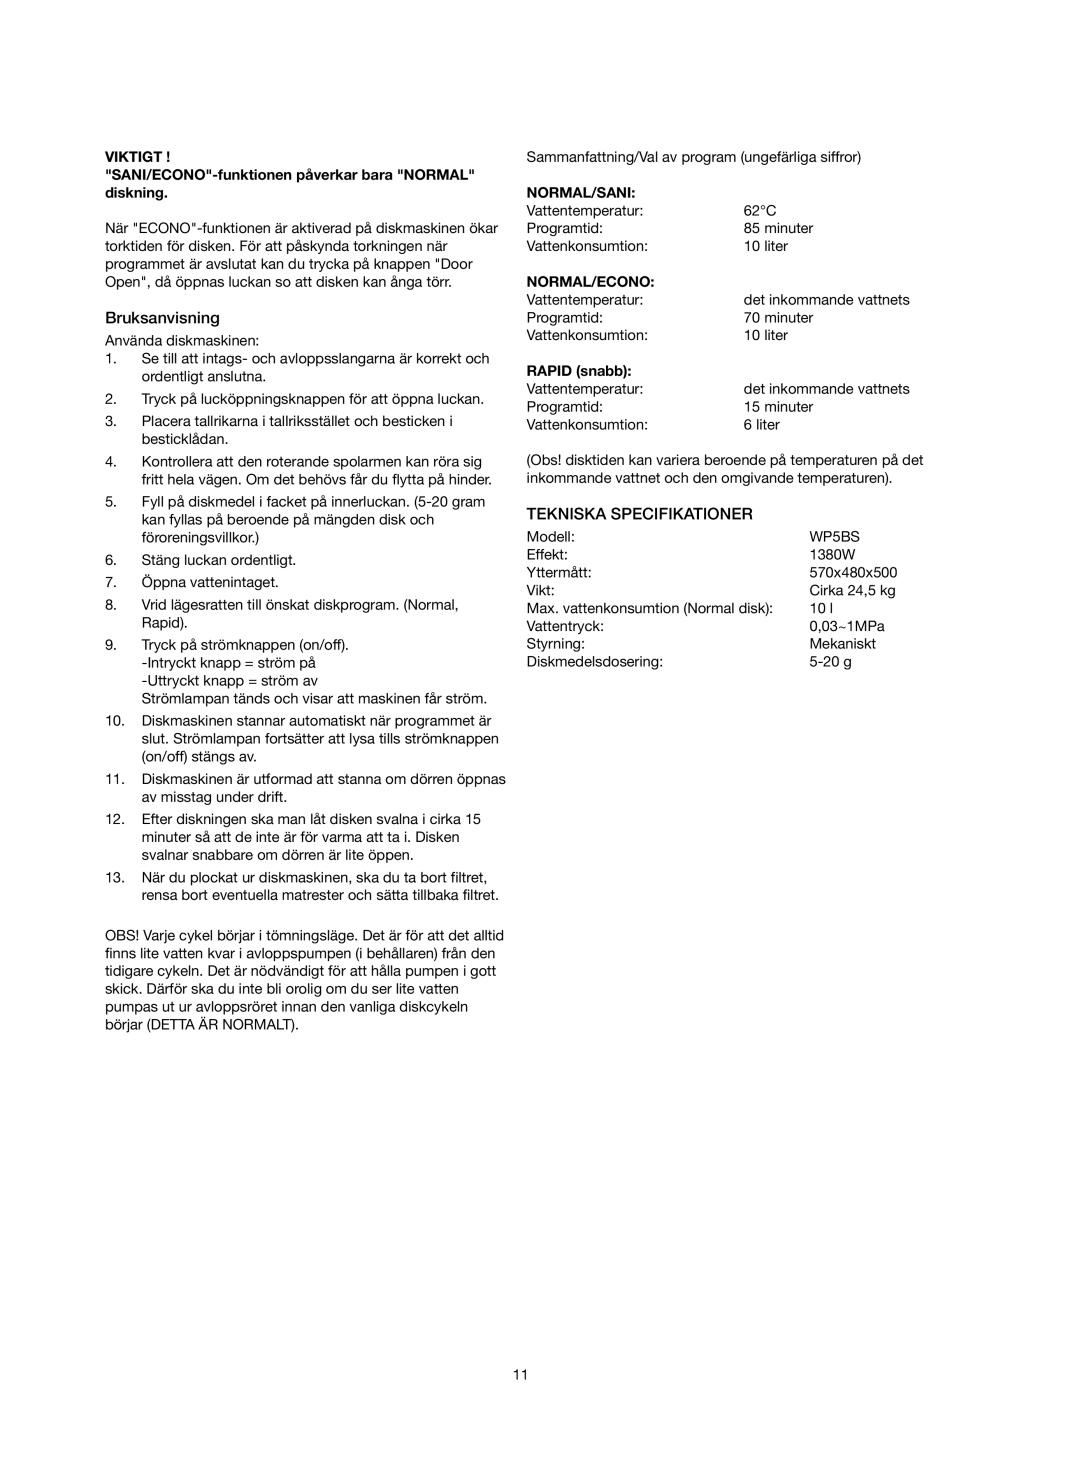 Melissa 758-007 manual Bruksanvisning, Tekniska Specifikationer, Normal/Sani, RAPID snabb, Viktigt, Normal/Econo 